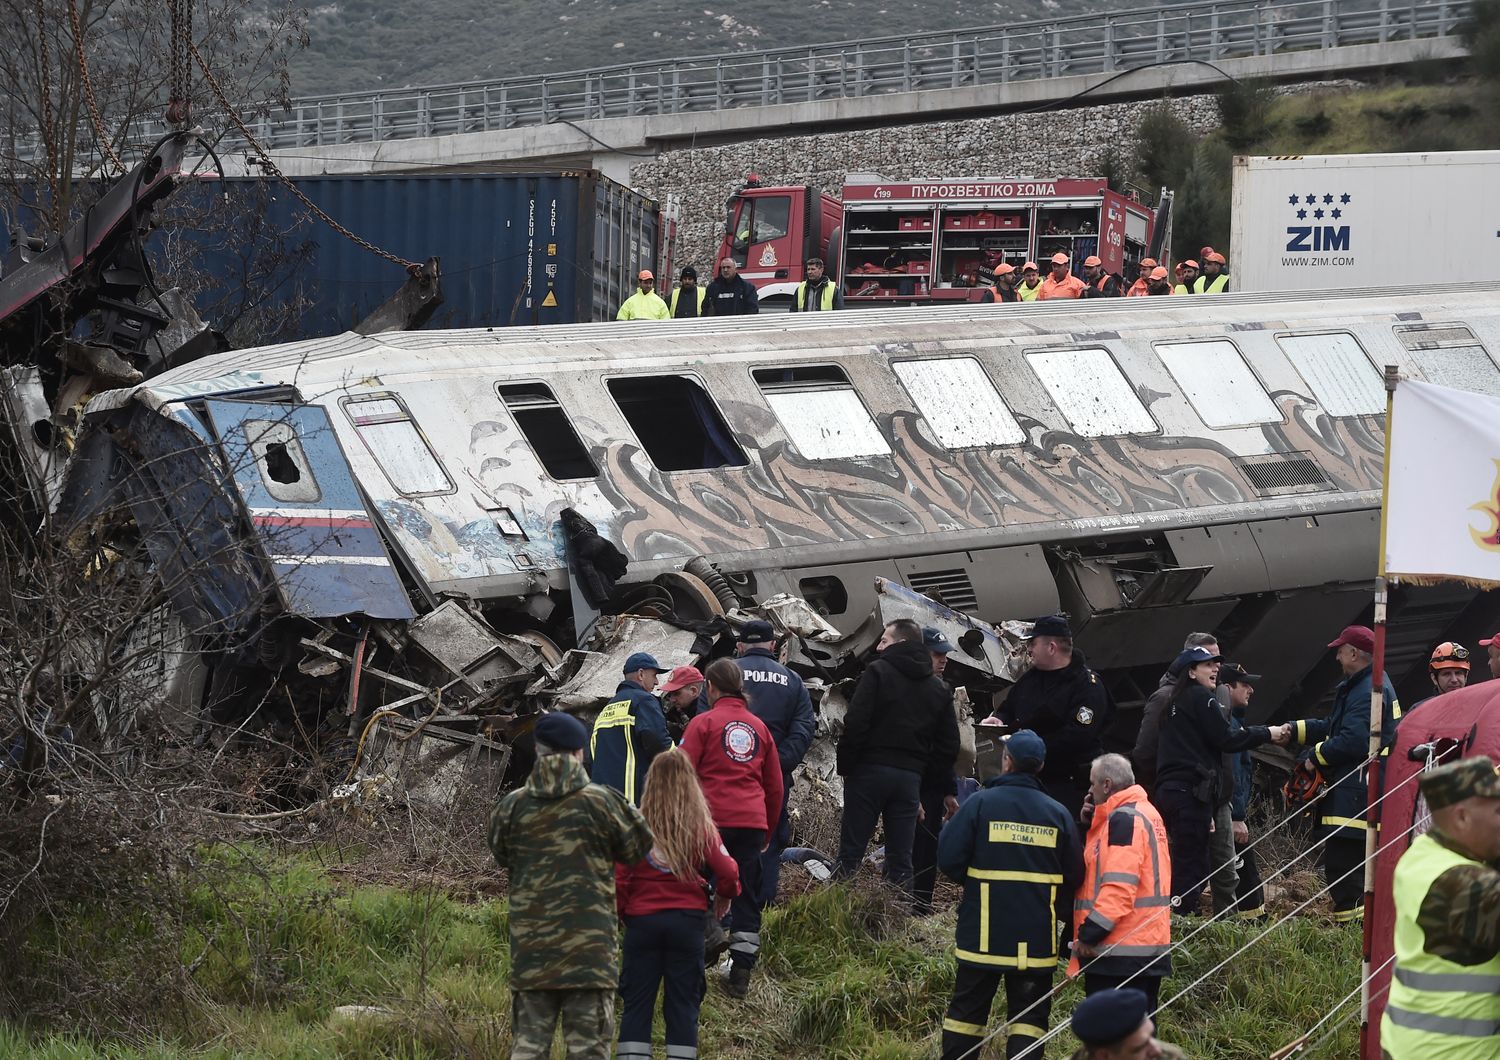 incidenti ferroviari europa 25 anni